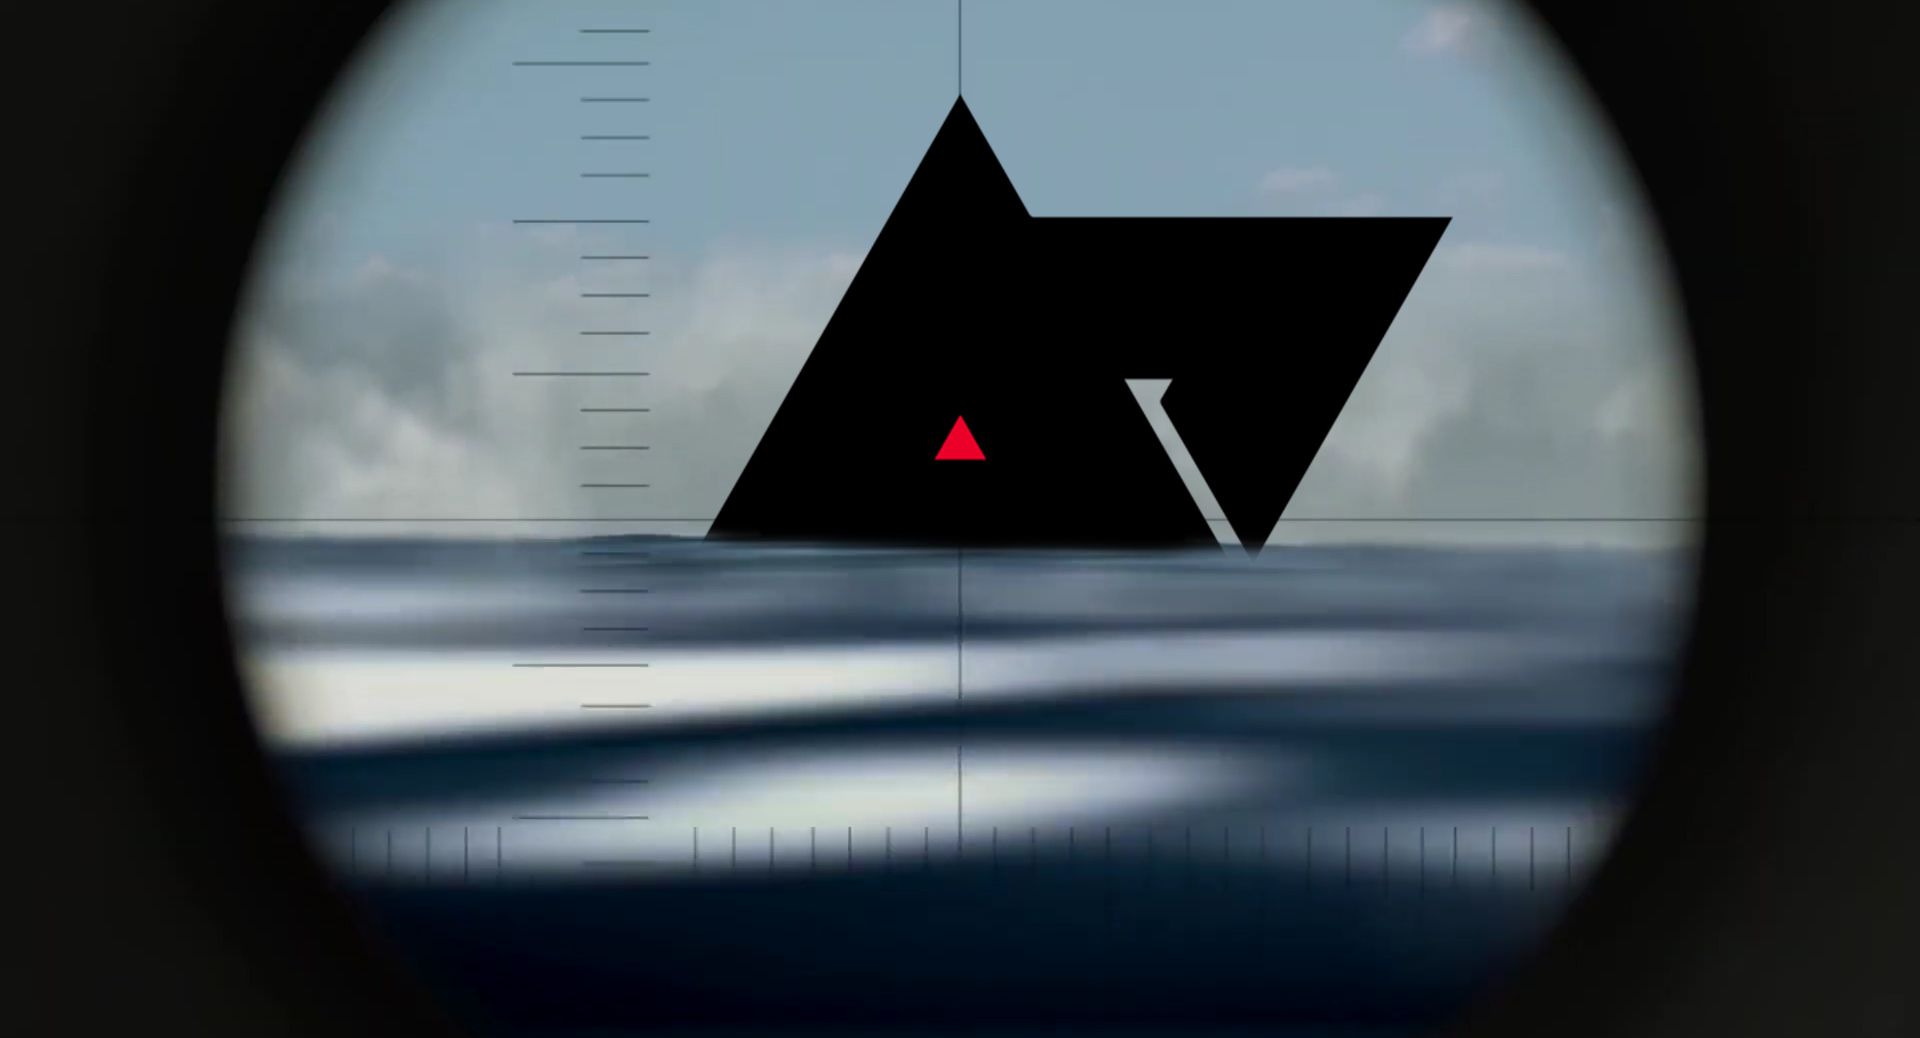 AP logo viewed through a periscope